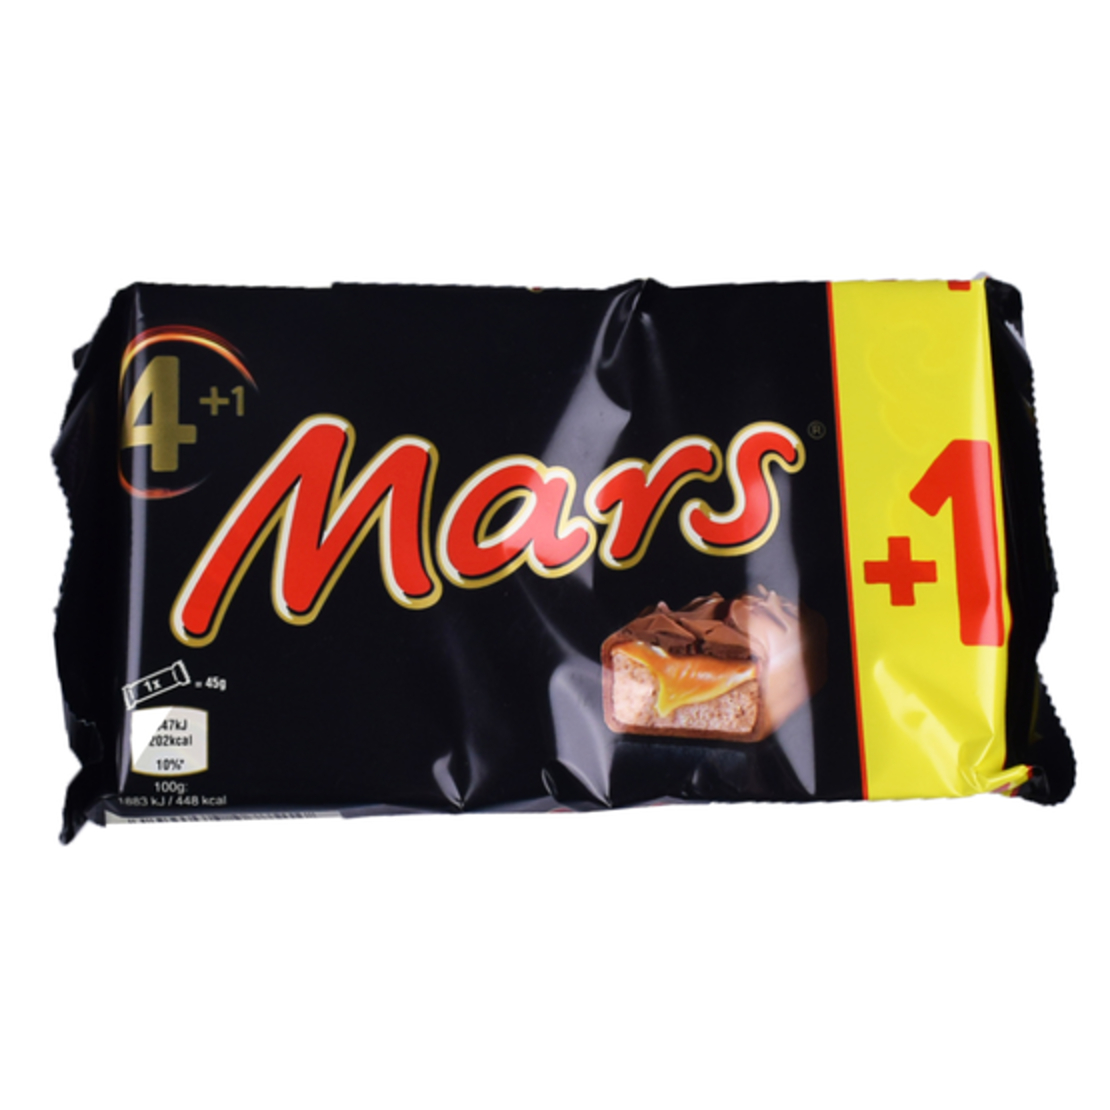 Mars 4+1 225g